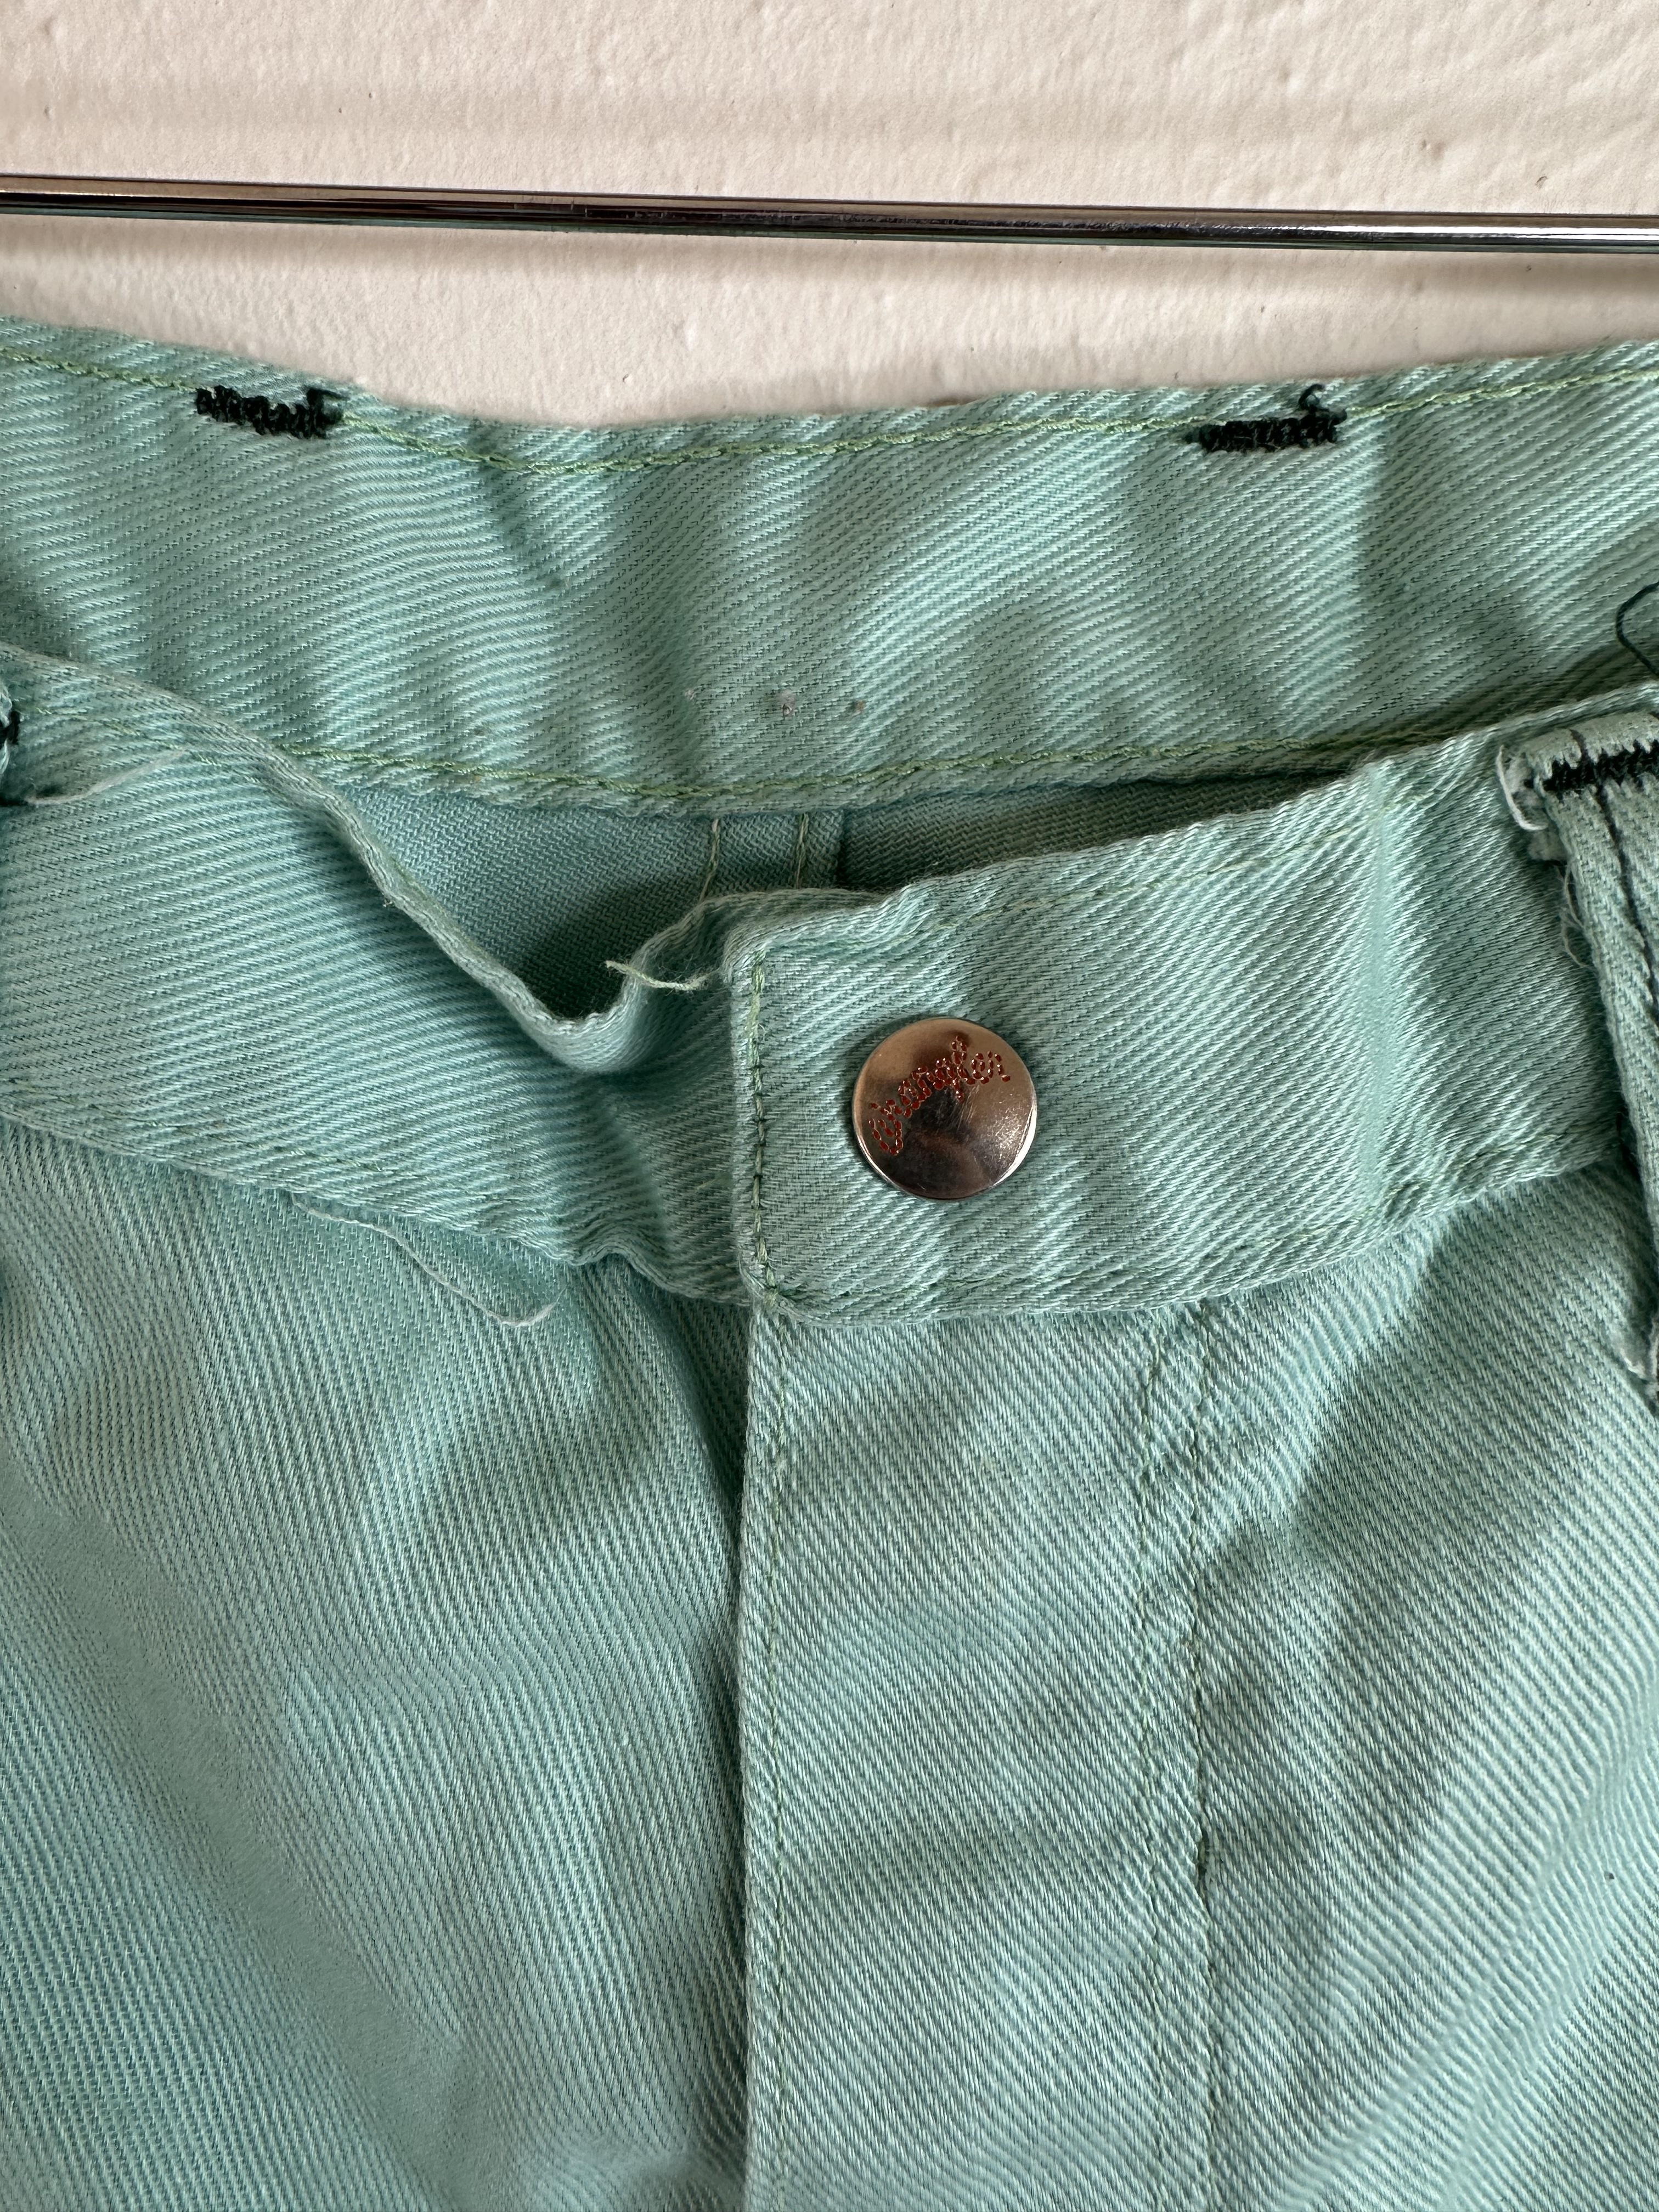 Vintage 70s Teal Sea Foam Green Wrangler Bell Bottoms Flare Denim jeans  Size 32X28. - Vagabonds Vintage